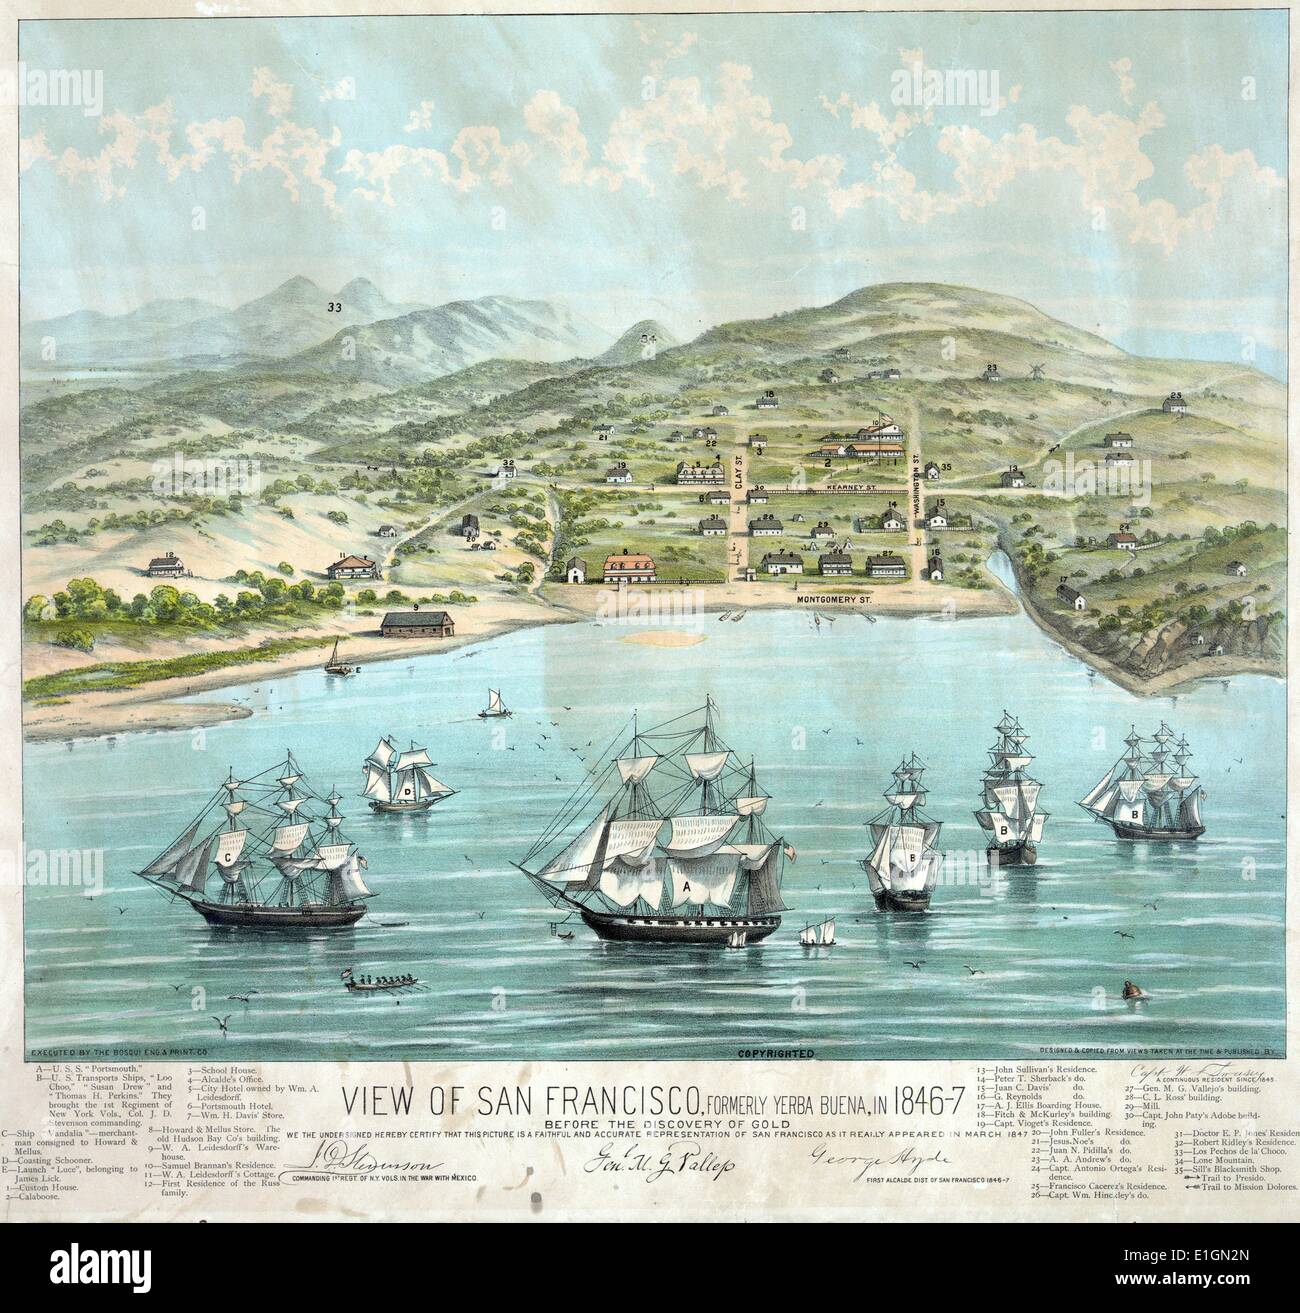 Stampa a colori di San Francisco, formalmente Yerba Buena durante il 1840s,  prima della scoperta dell'oro. Datata 1884 Foto stock - Alamy